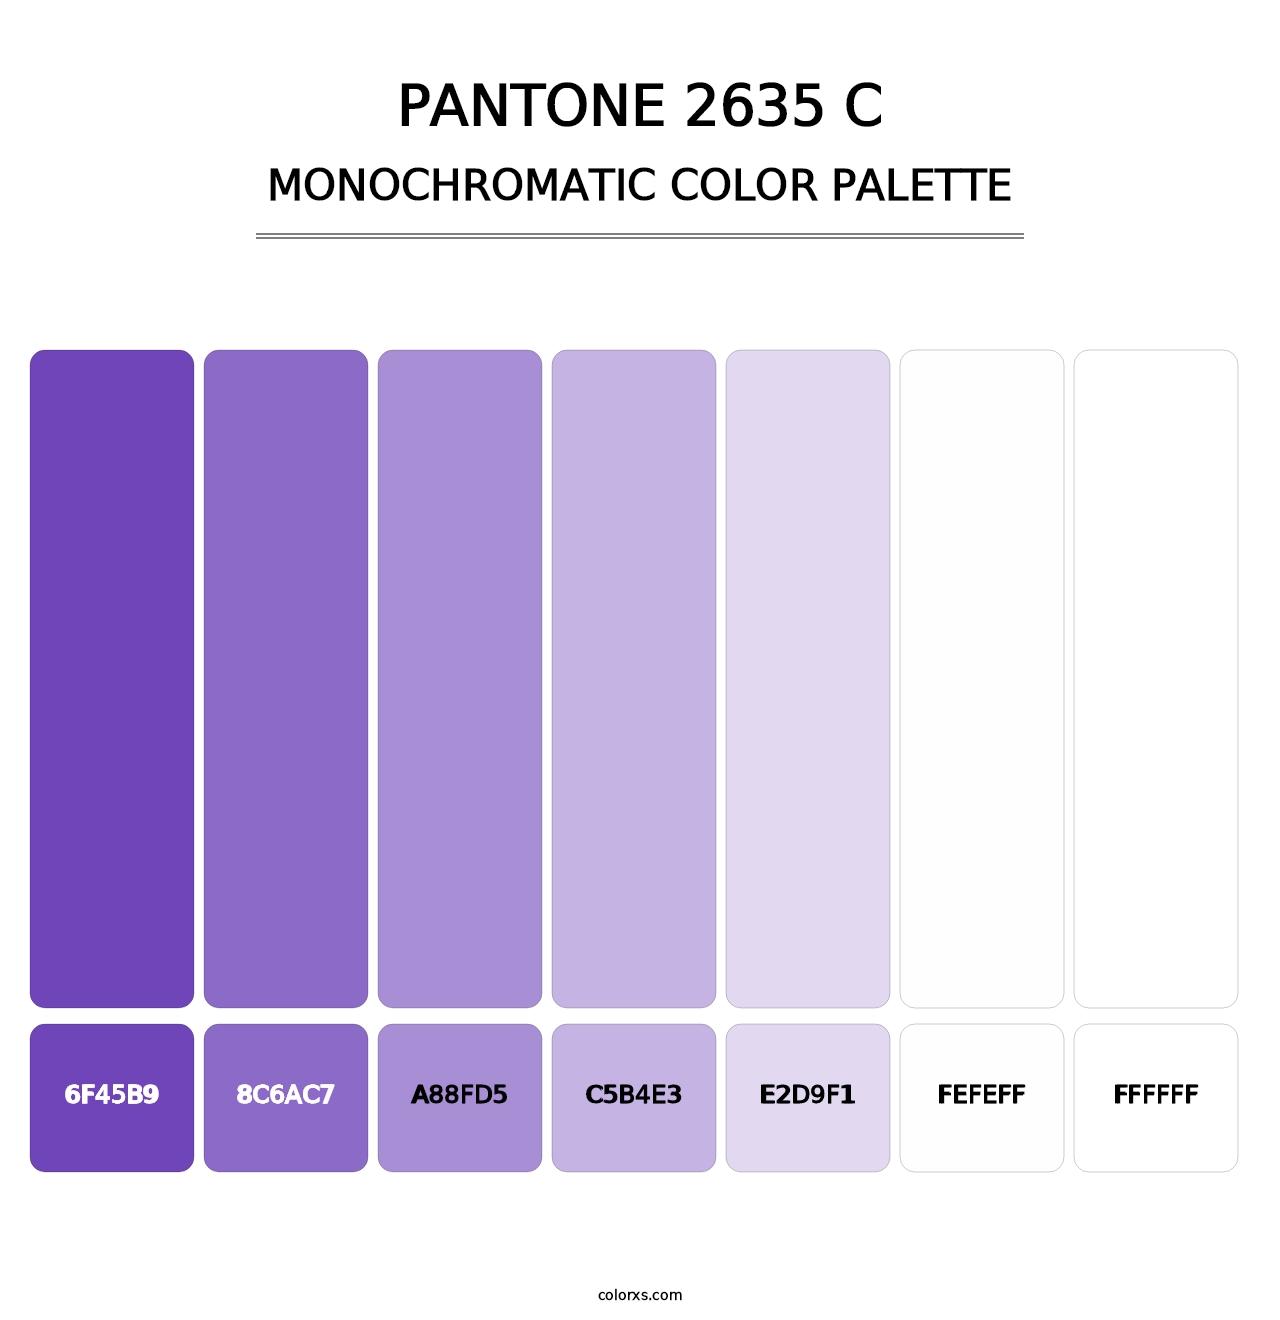 PANTONE 2635 C - Monochromatic Color Palette